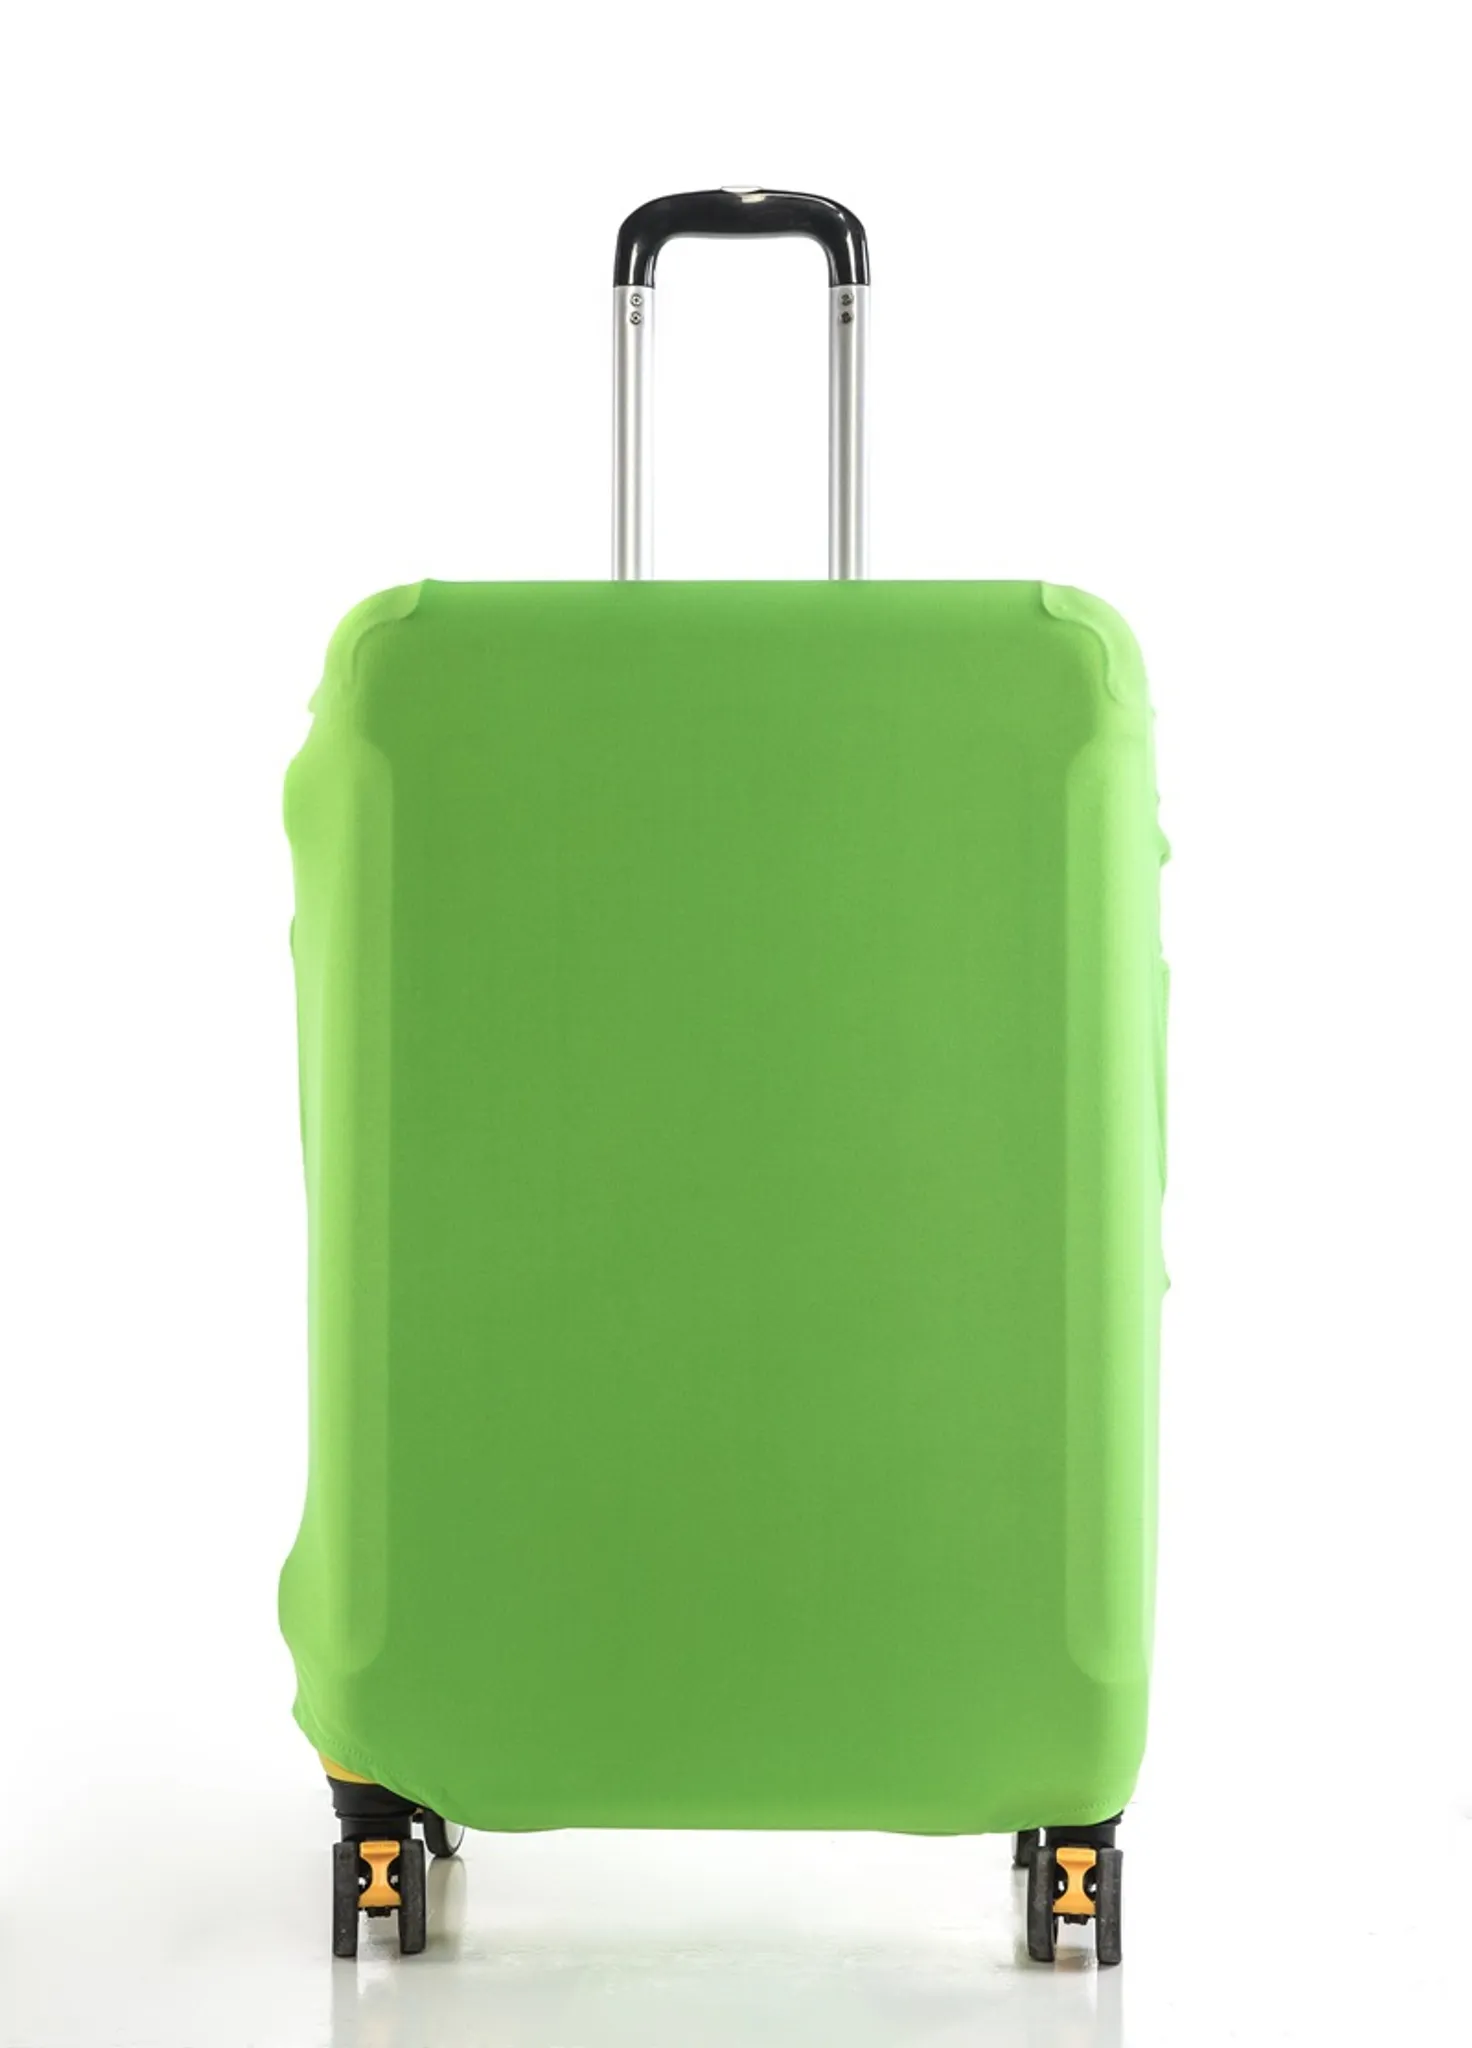 Mode & Accessoires Taschen Koffer & Reisegepäck Kofferzubehör Elastizität Schutzabdeckung Reisegepäck 